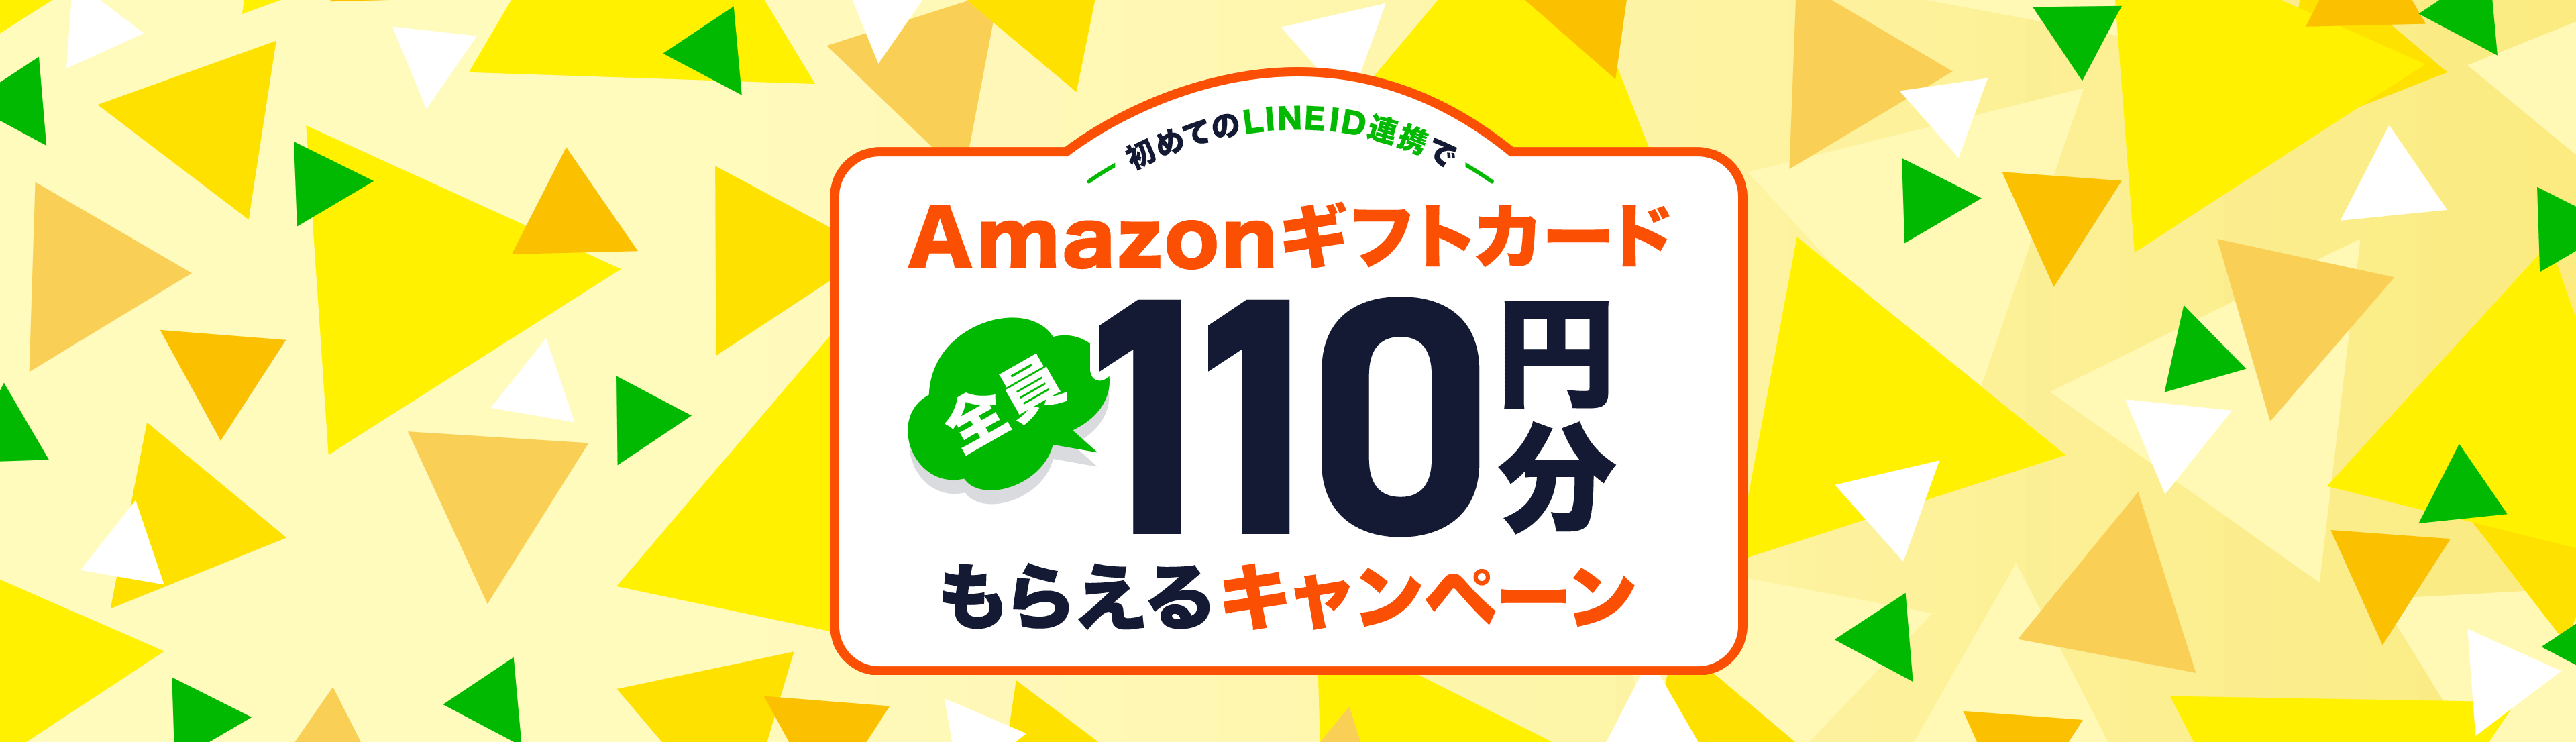 初めてのLINE ID連携でAmazonギフトカード全員100円分もらえるキャンペーン